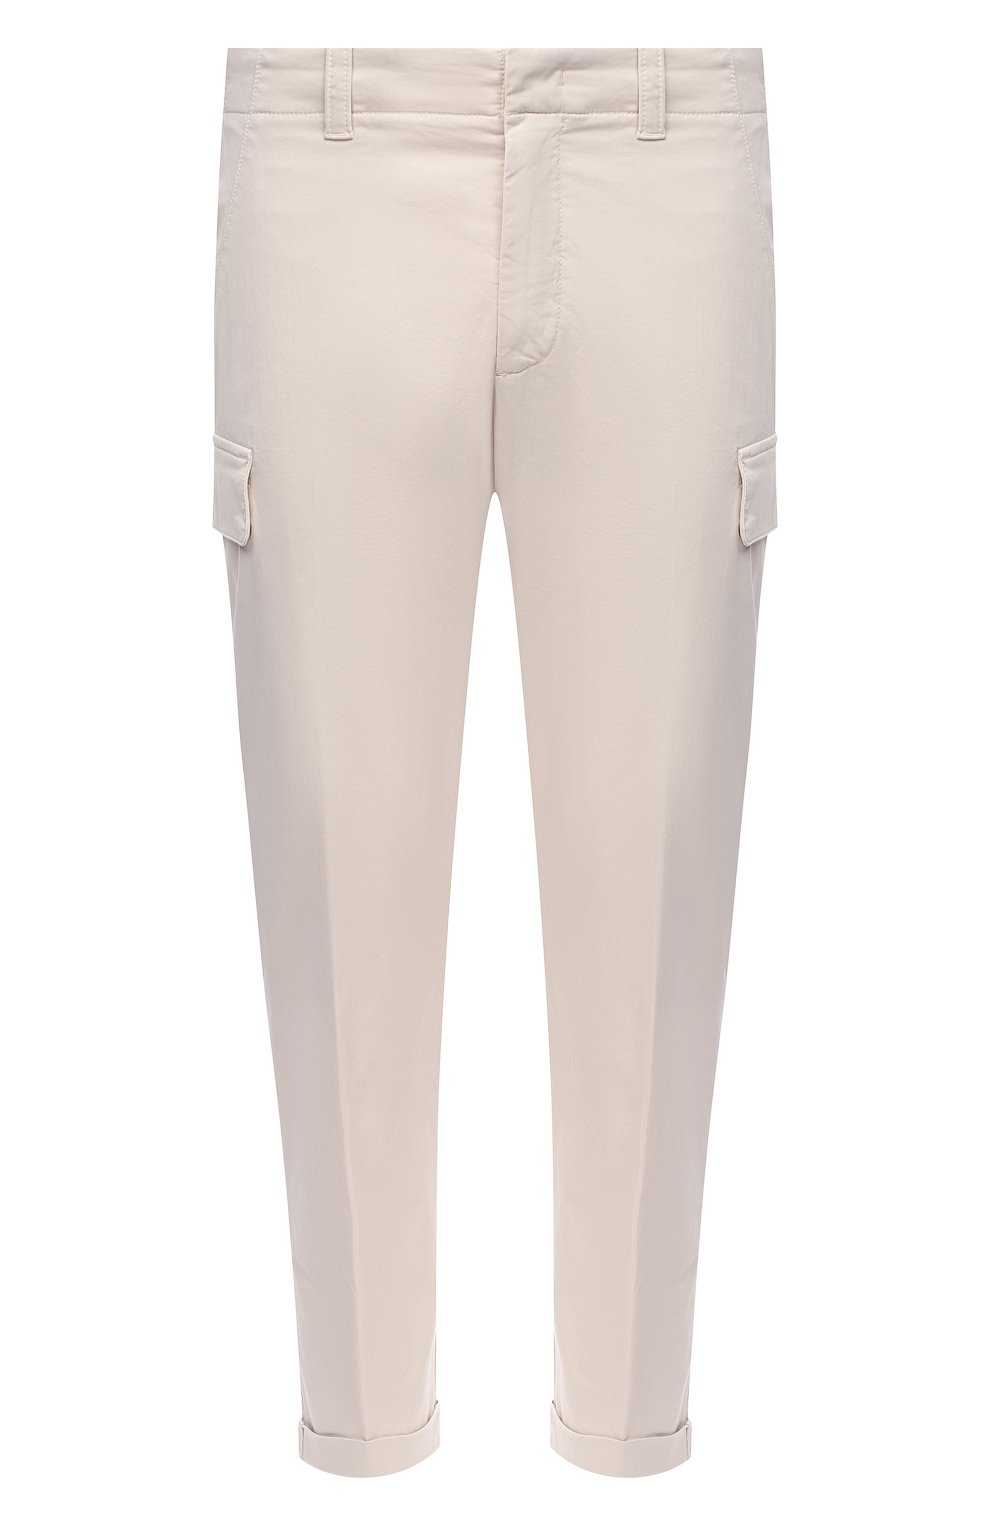 Мужские белые хлопковые брюки-карго Z ZEGNA купить в интернет-магазине ЦУМ,арт. VW115/ZZ358